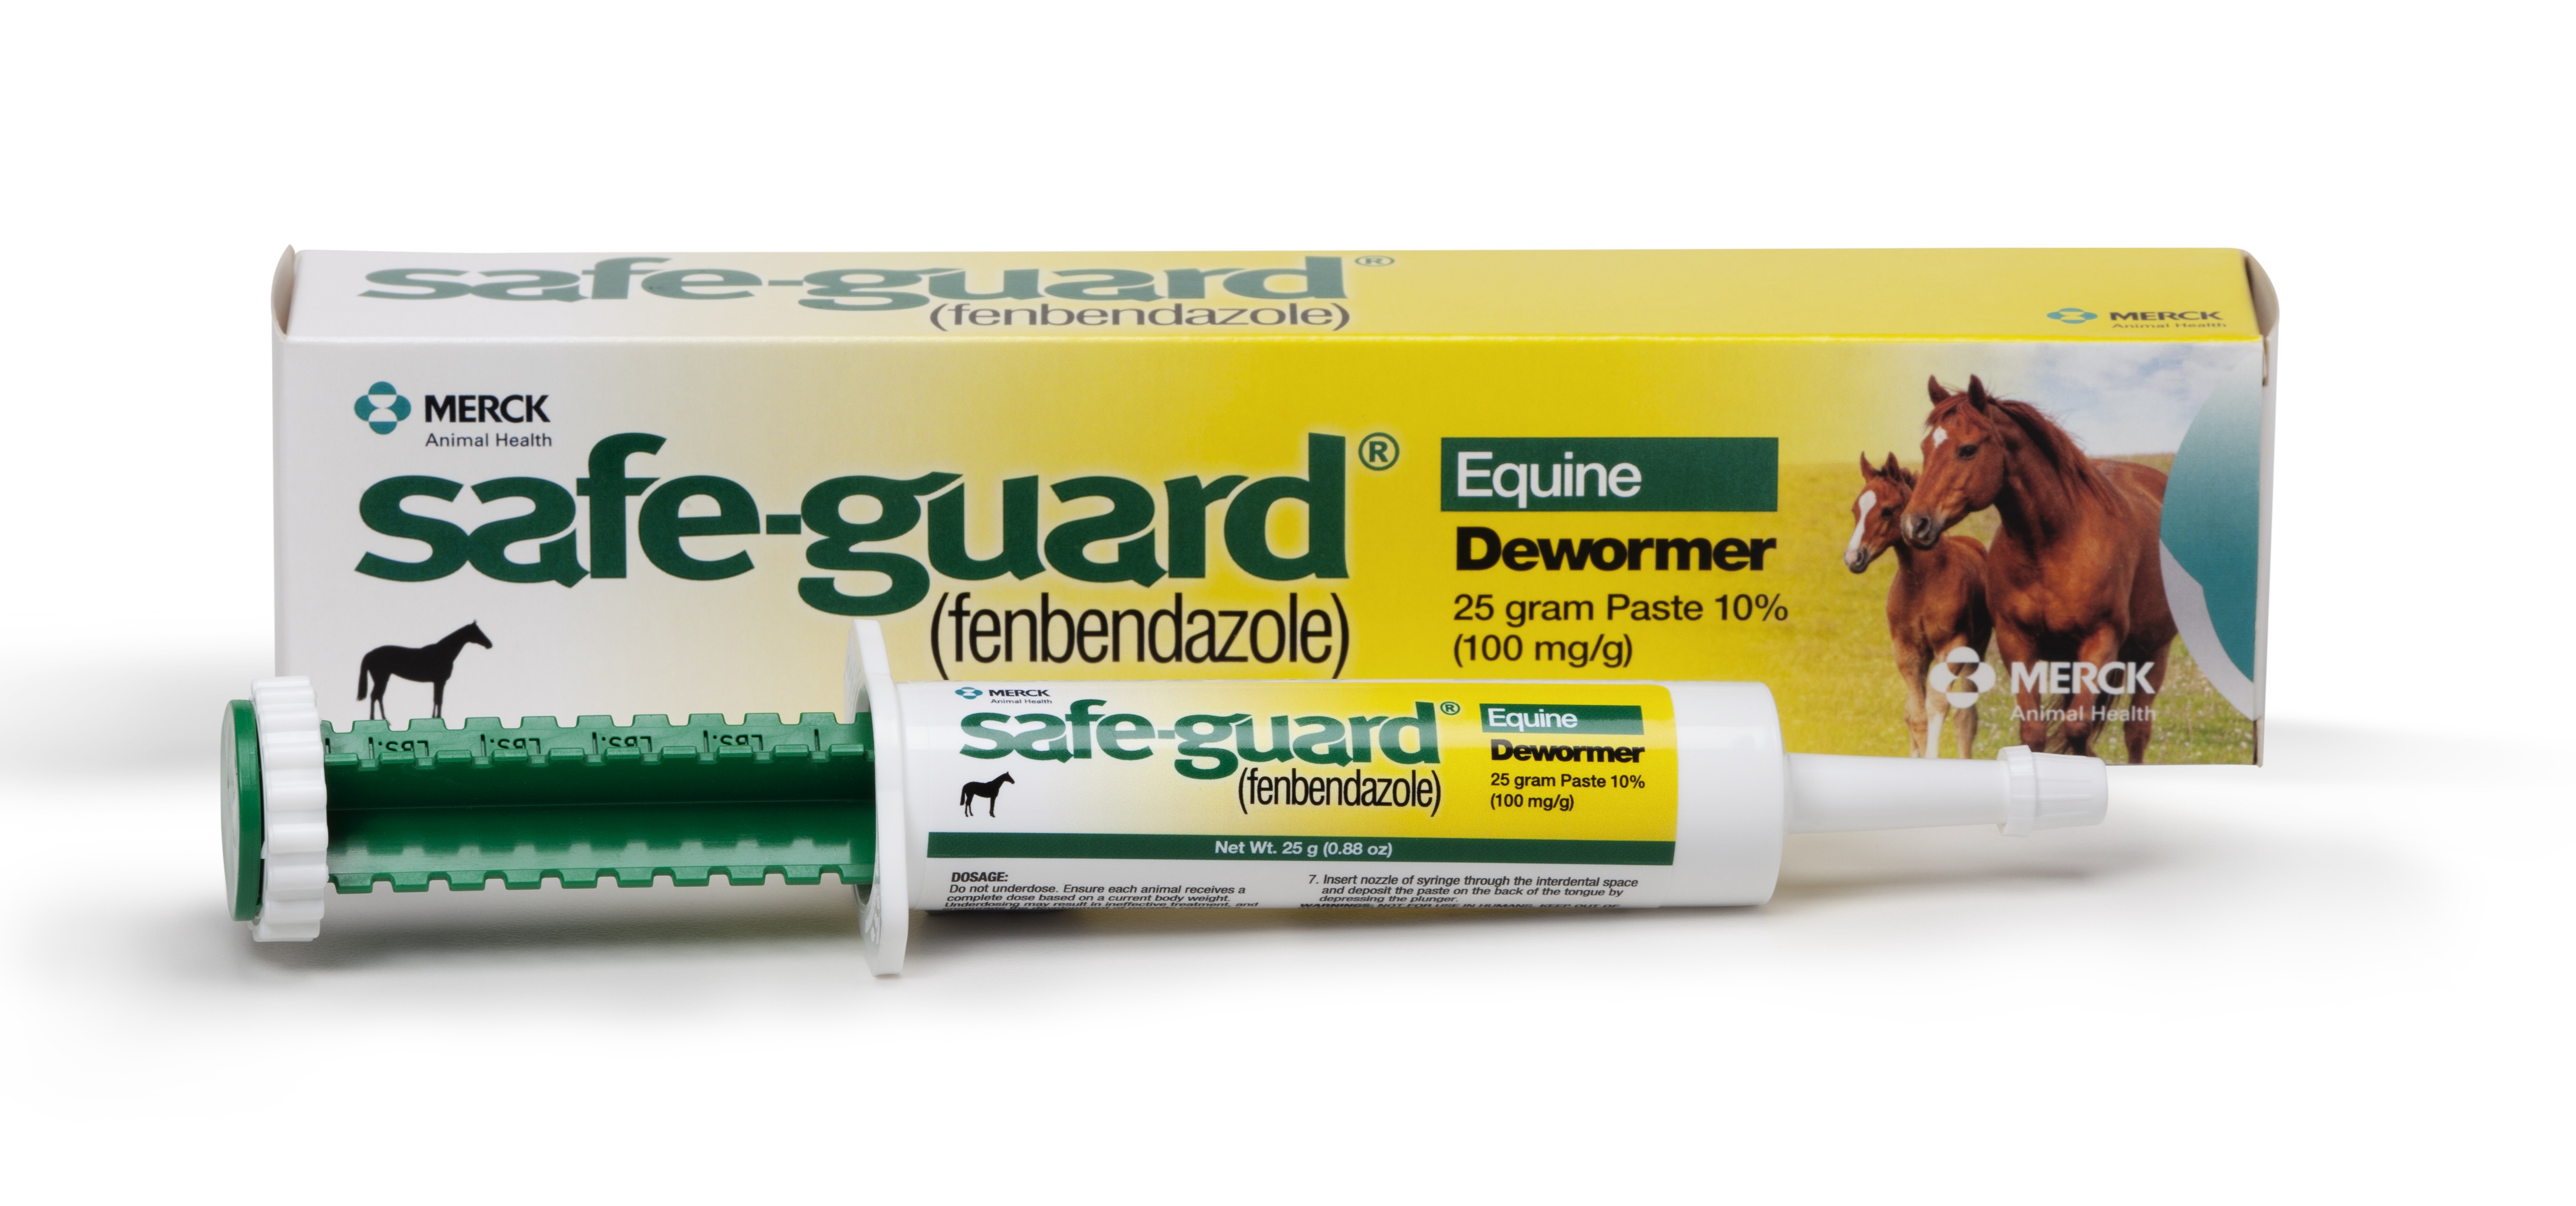 Safe-Guard Equine Dewormer Paste 25 gm